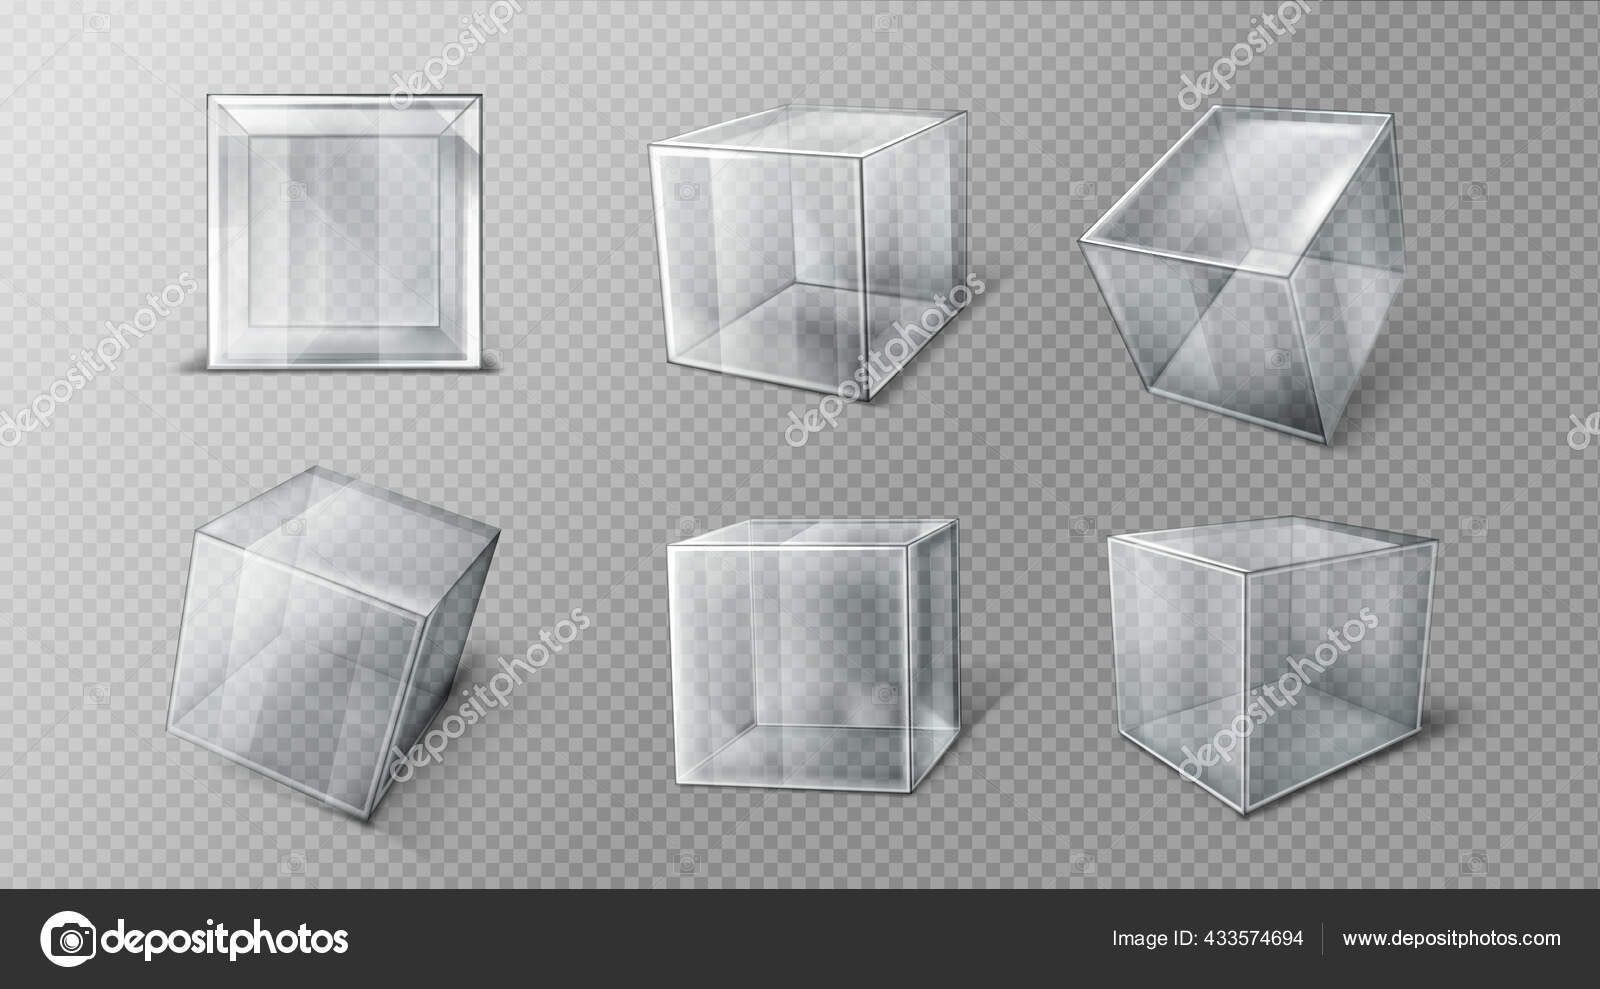 Soporte de mesa de vidrio de plástico en diferentes ángulos de visión  conjunto transparente ilustración vectorial realista